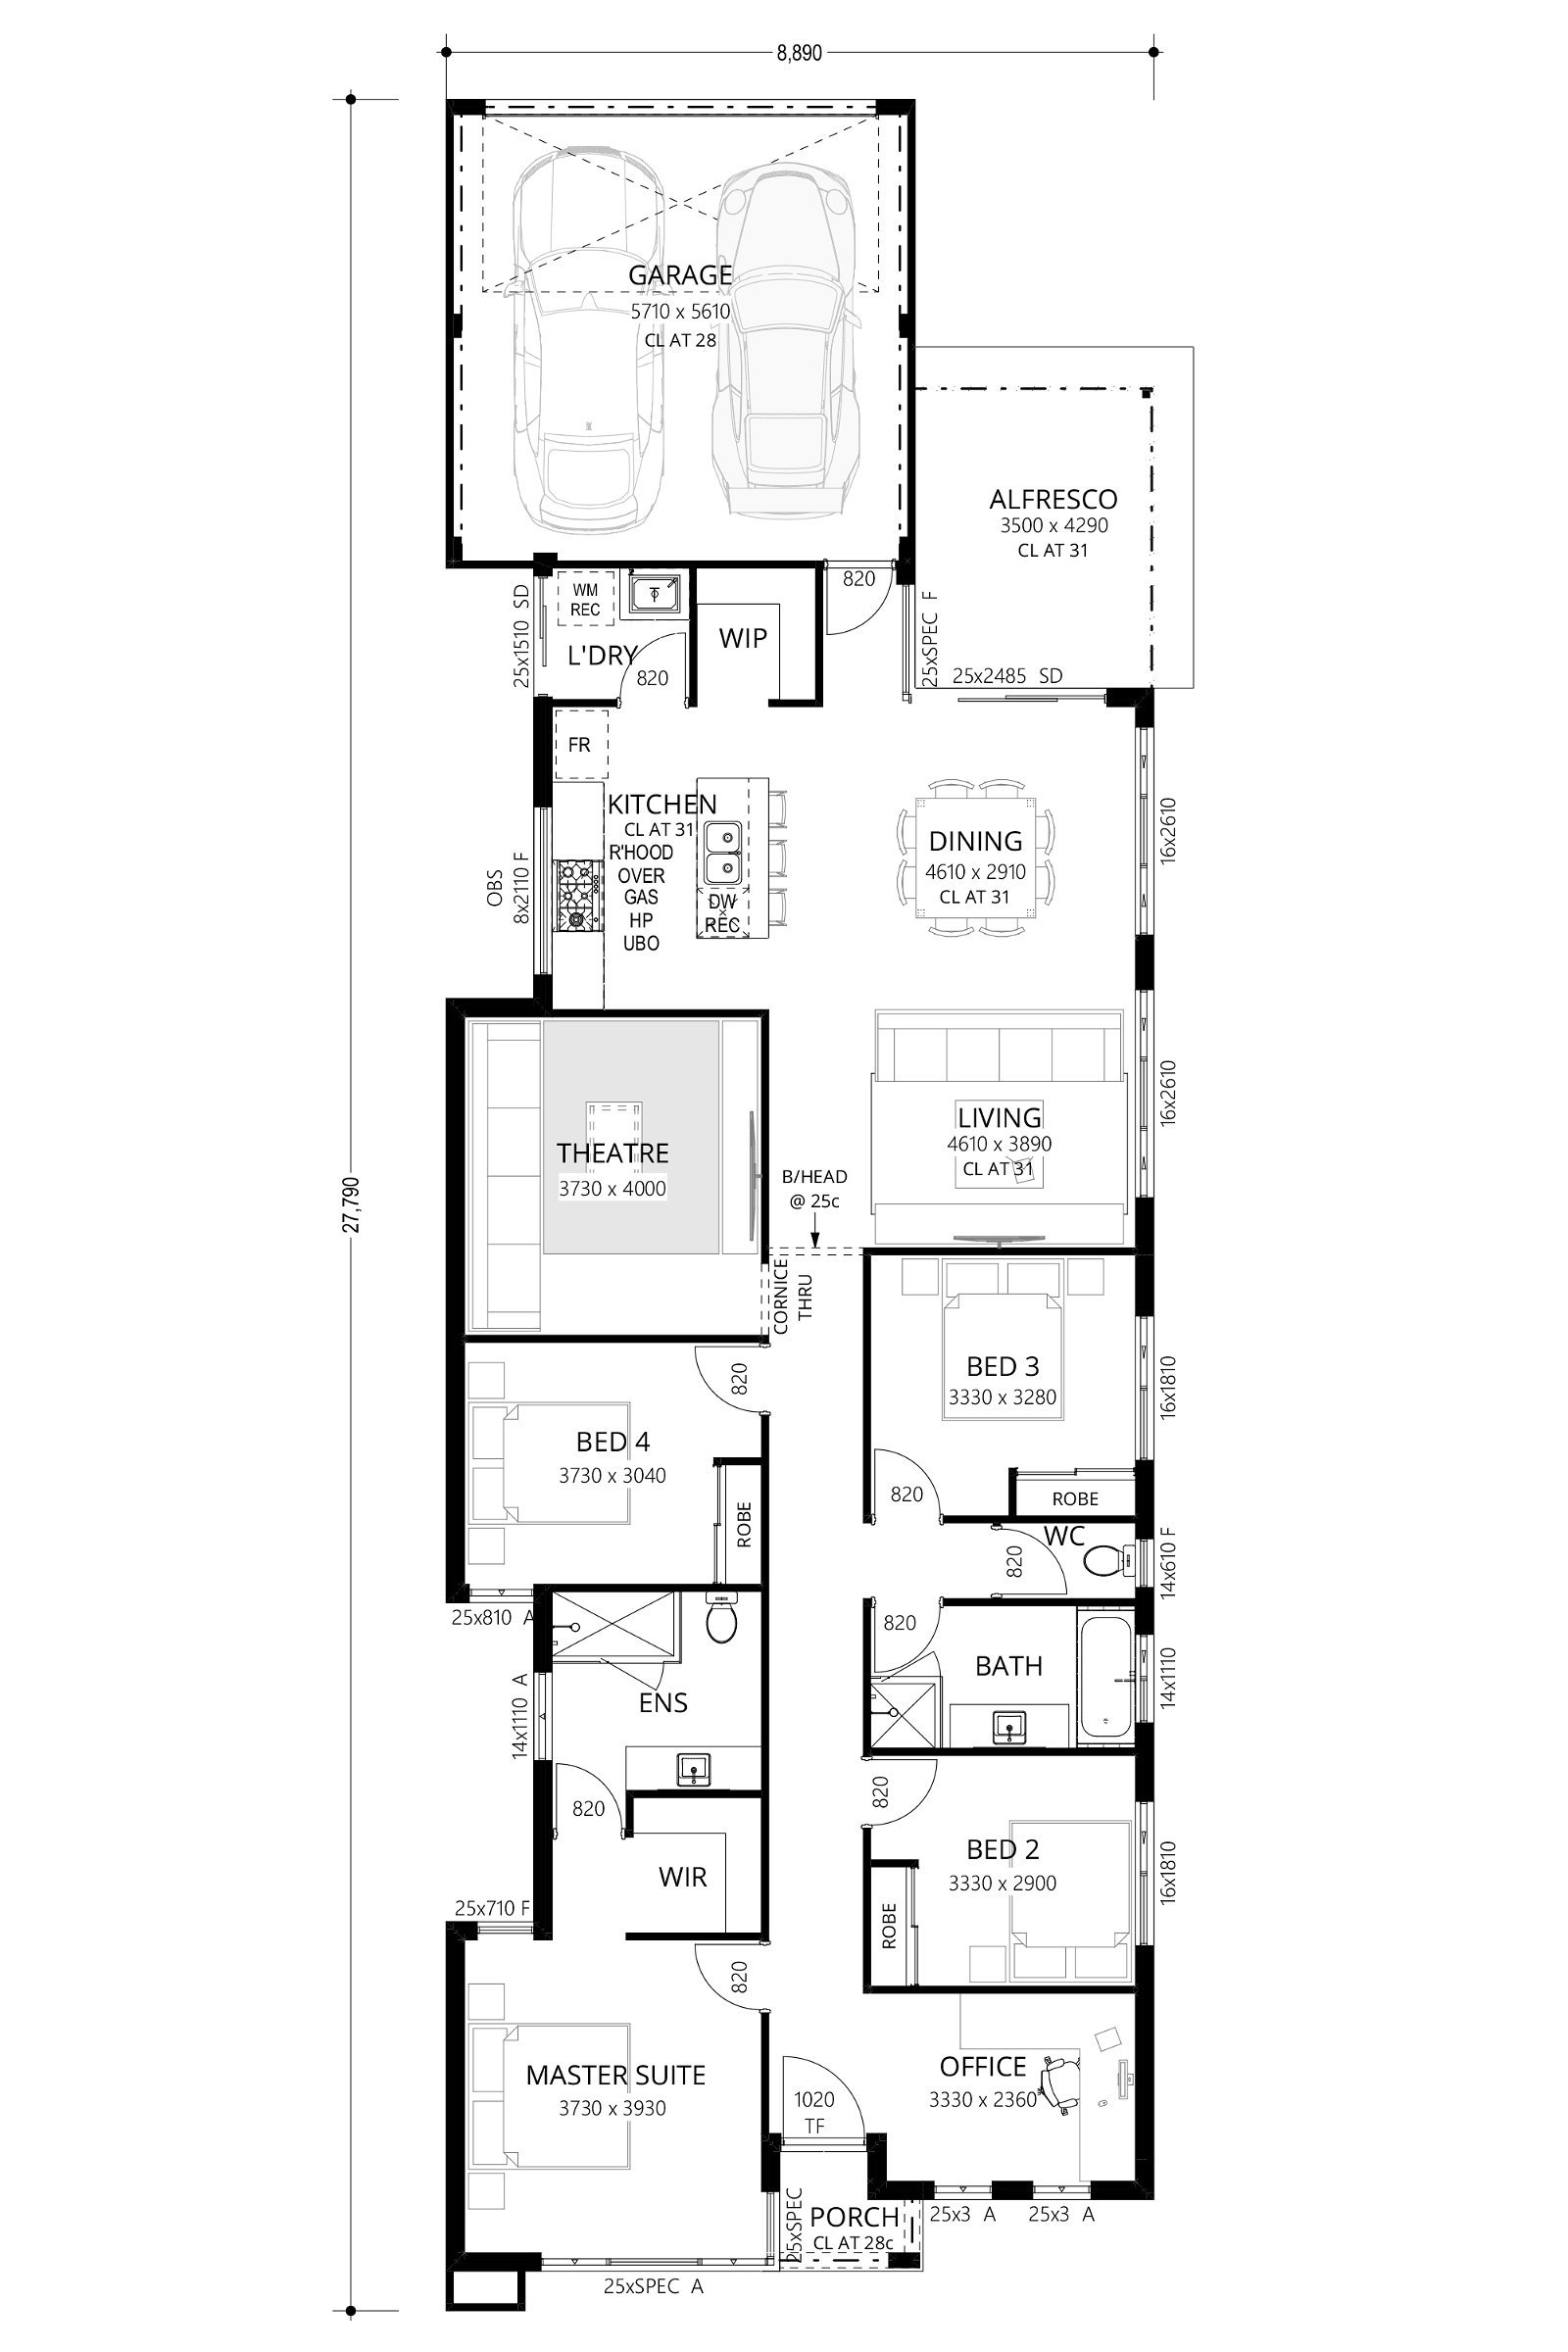 Residential Attitudes - El Camino - Floorplan - El Camino Floorplan Website